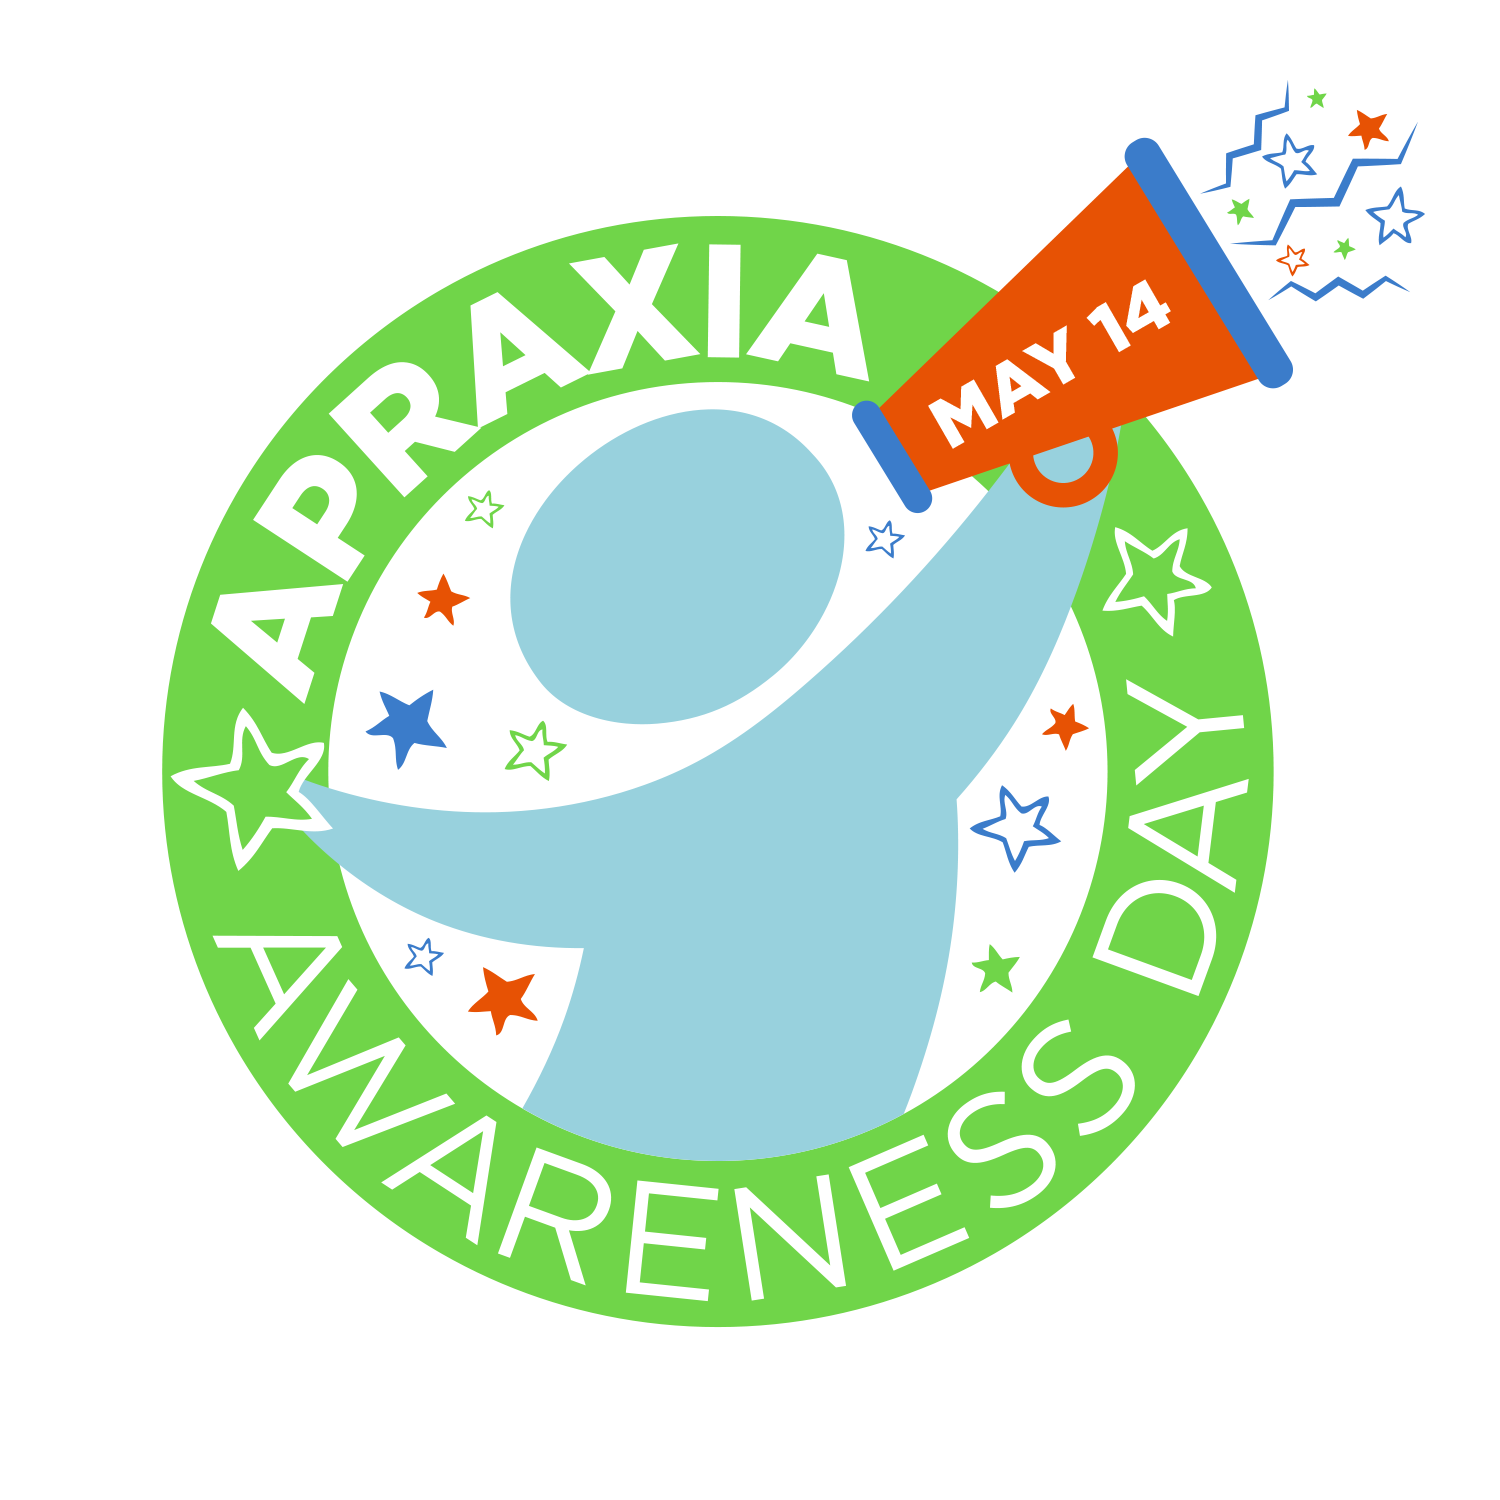 Apraxia-Awareness-Day-3.png (1500×1500)